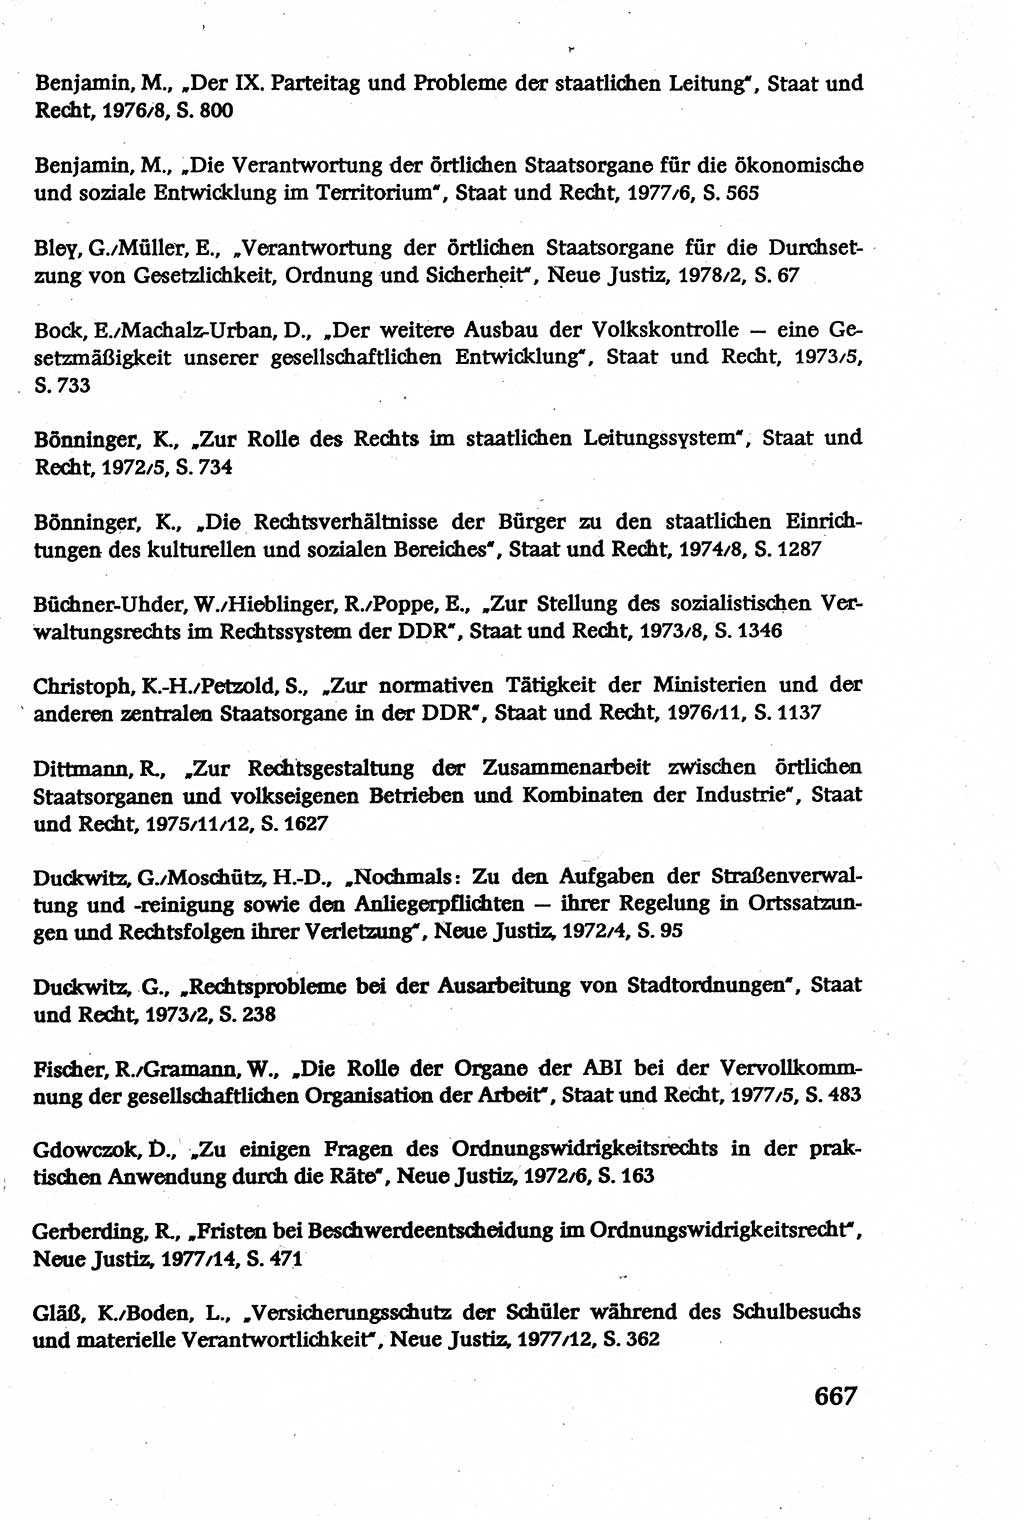 Verwaltungsrecht [Deutsche Demokratische Republik (DDR)], Lehrbuch 1979, Seite 667 (Verw.-R. DDR Lb. 1979, S. 667)